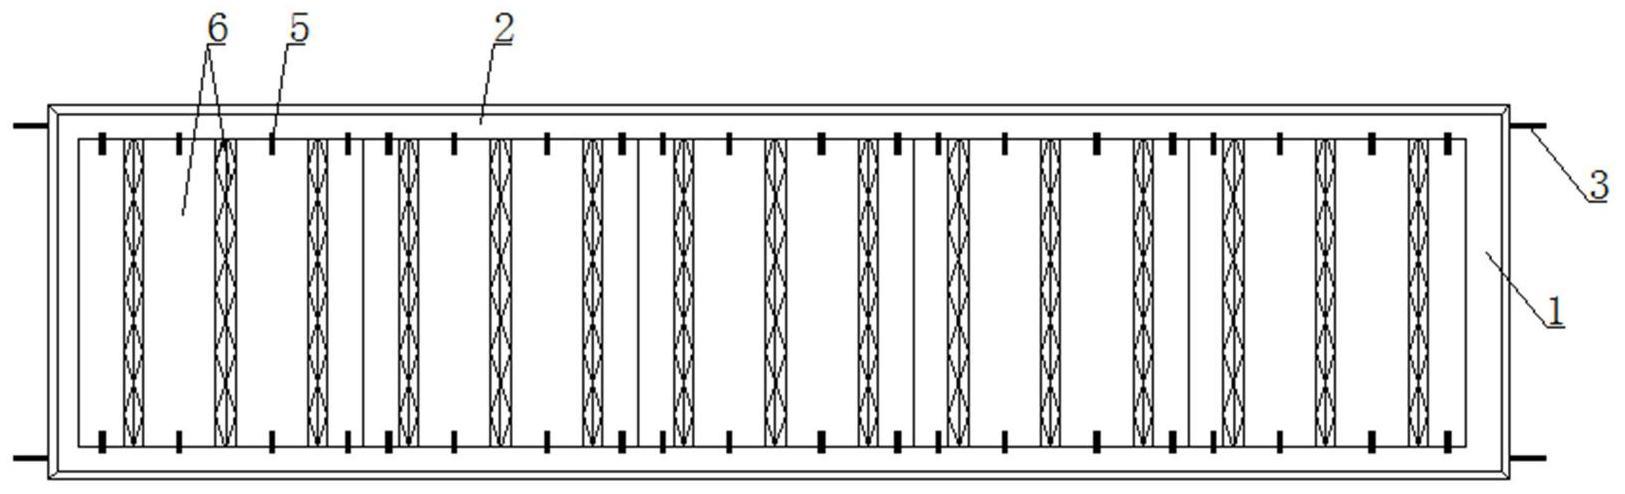 装配式自承力预应力板的制作方法